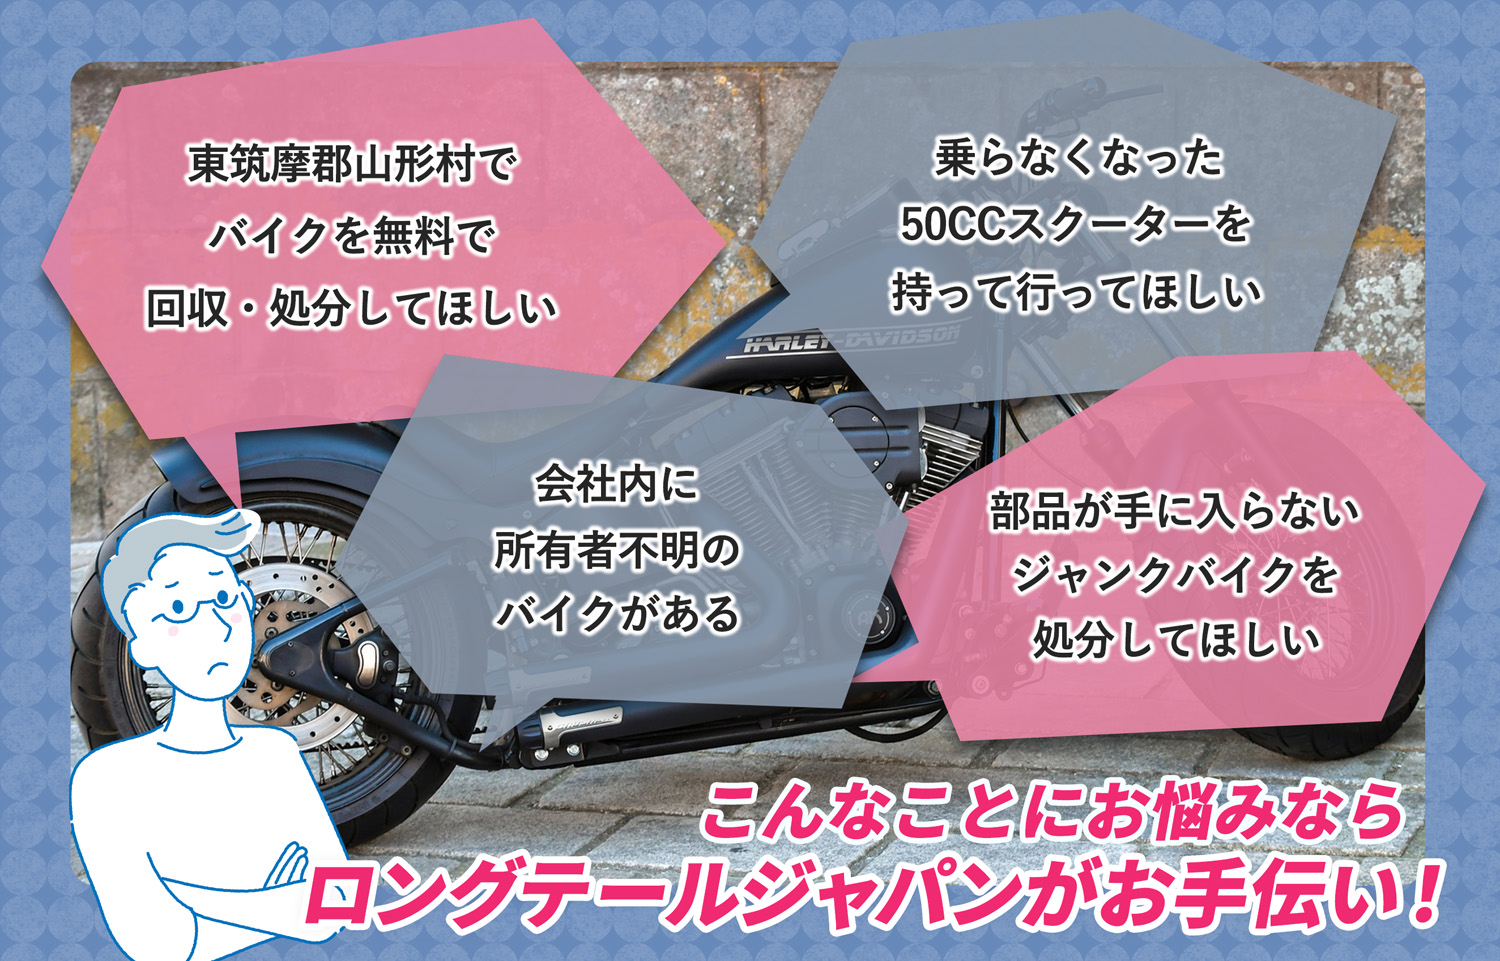 東筑摩郡山形村でこんなバイクの処分にお困りでしたらバイク無料回収処分隊がお手伝いいたします。